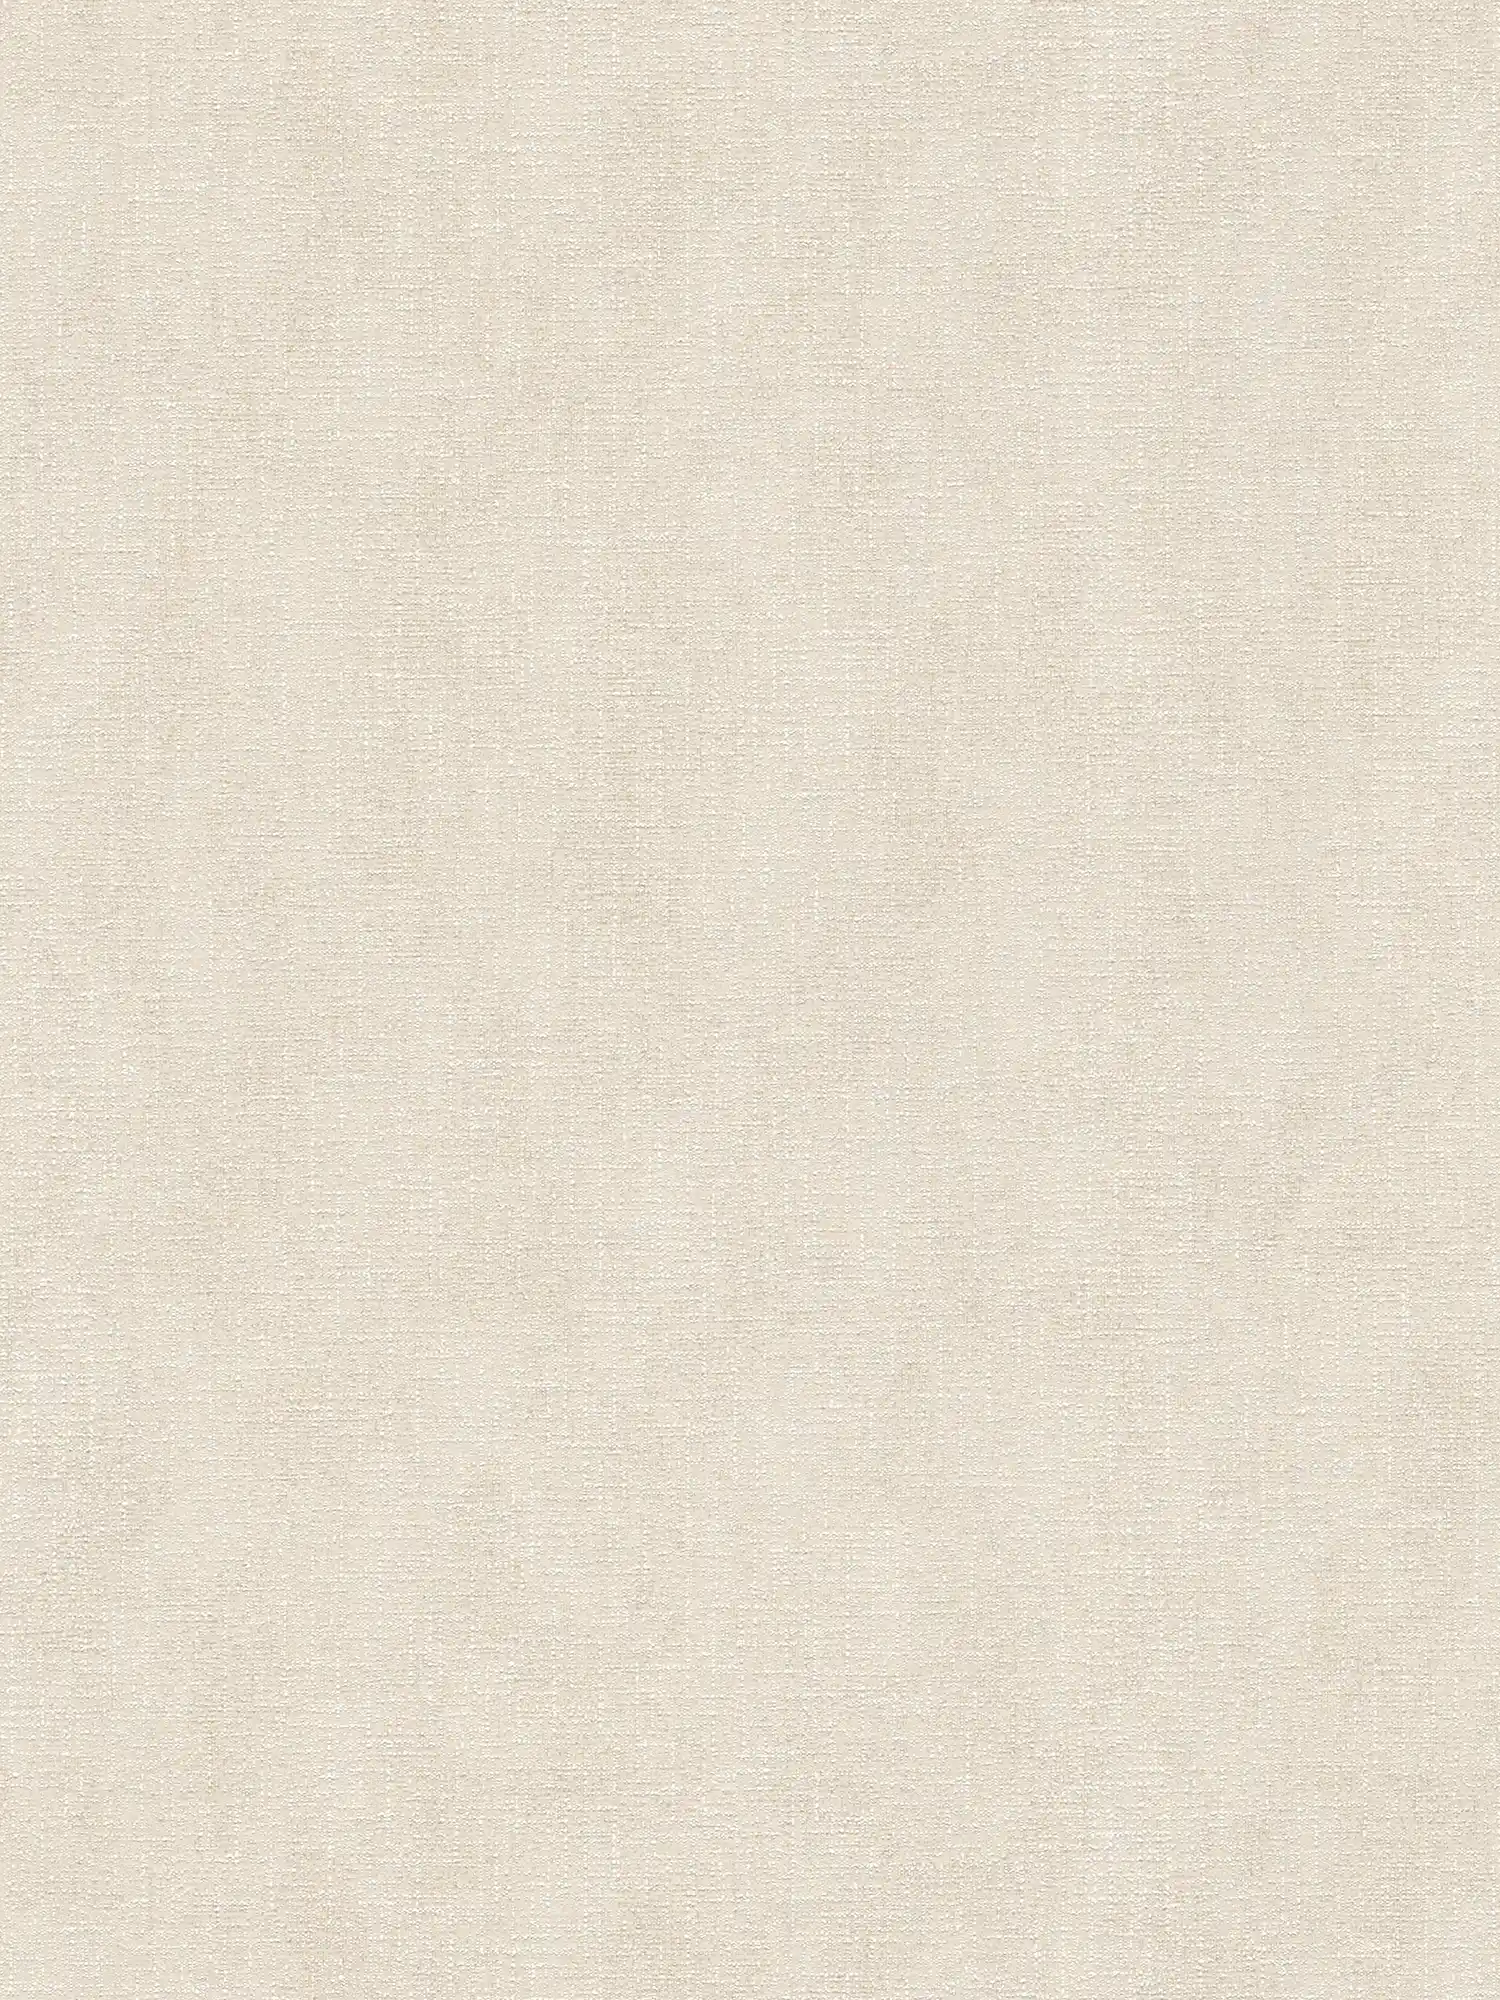 Carta da parati bianco crema con ottica tessile ed effetto shimmer - beige
